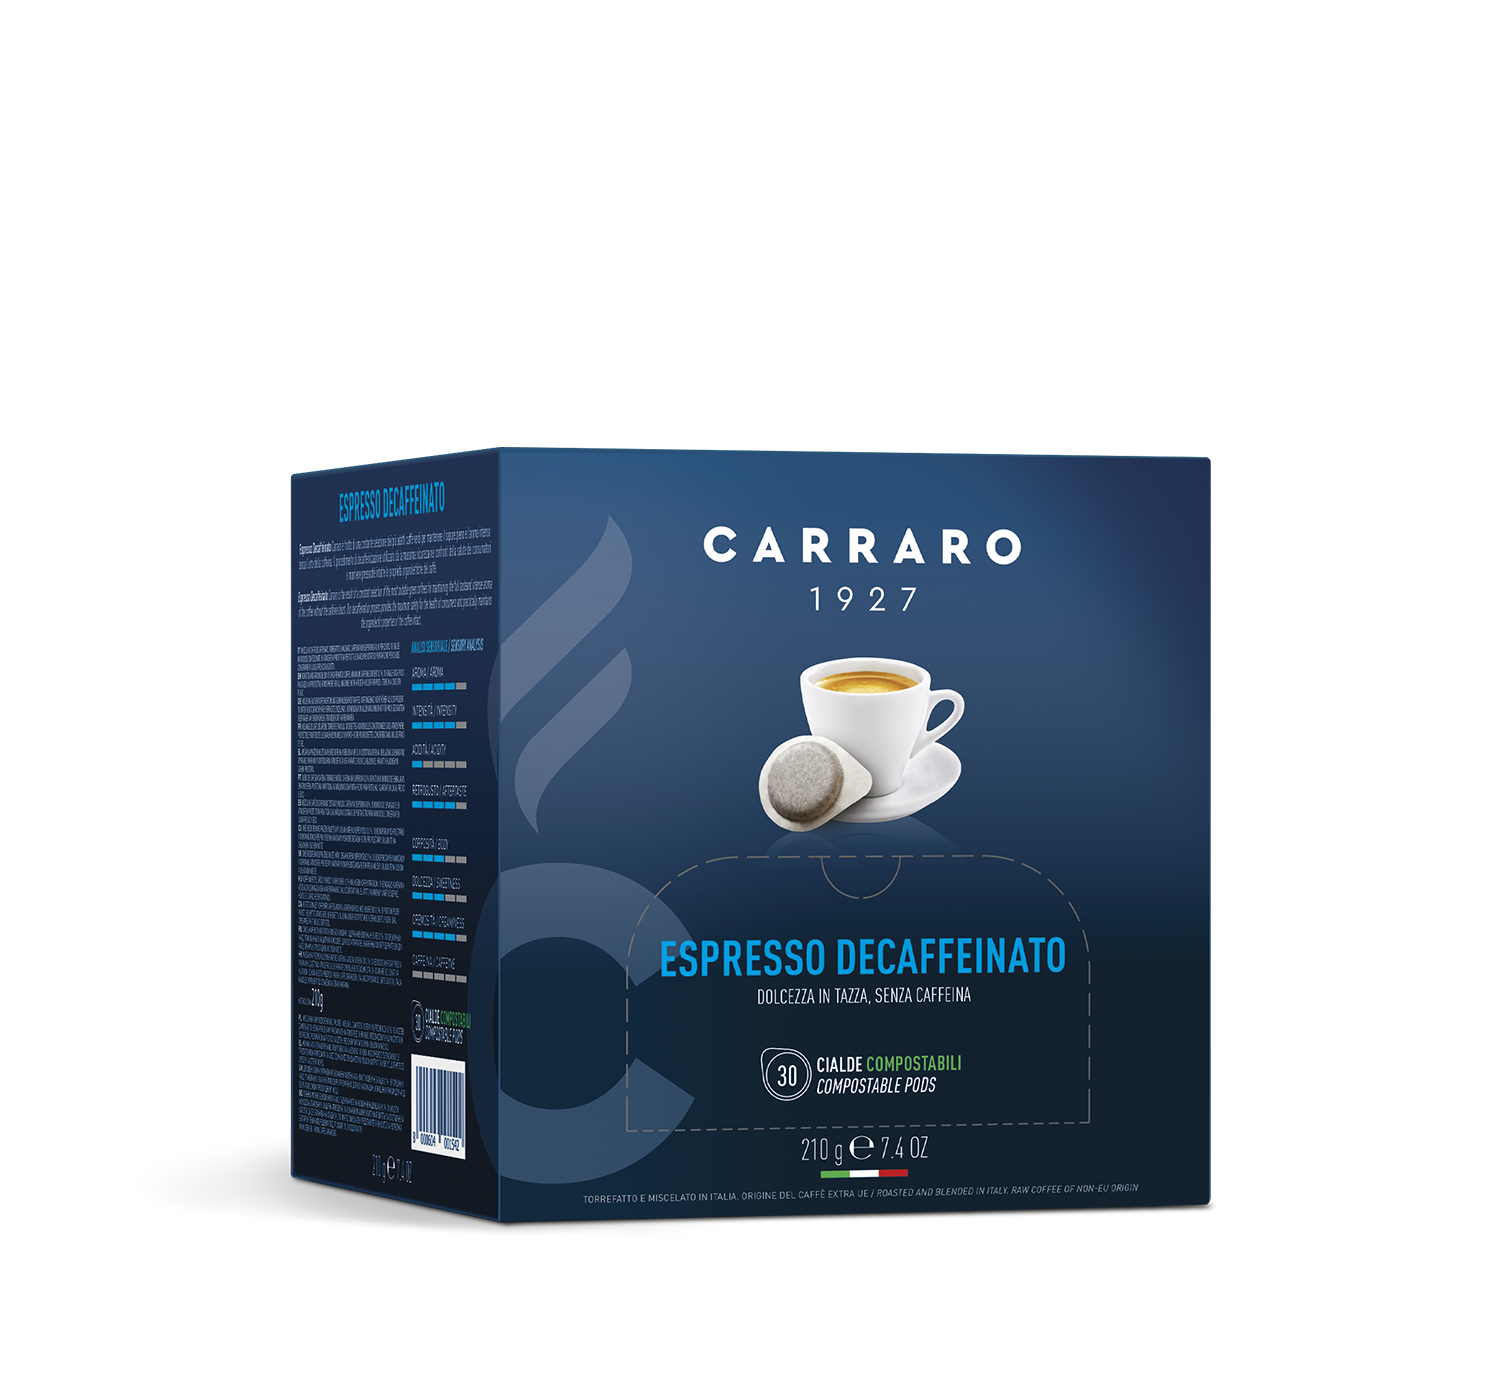 Retail - Espresso decaffeinato – 30 pods 7 g - Shop online Caffè Carraro